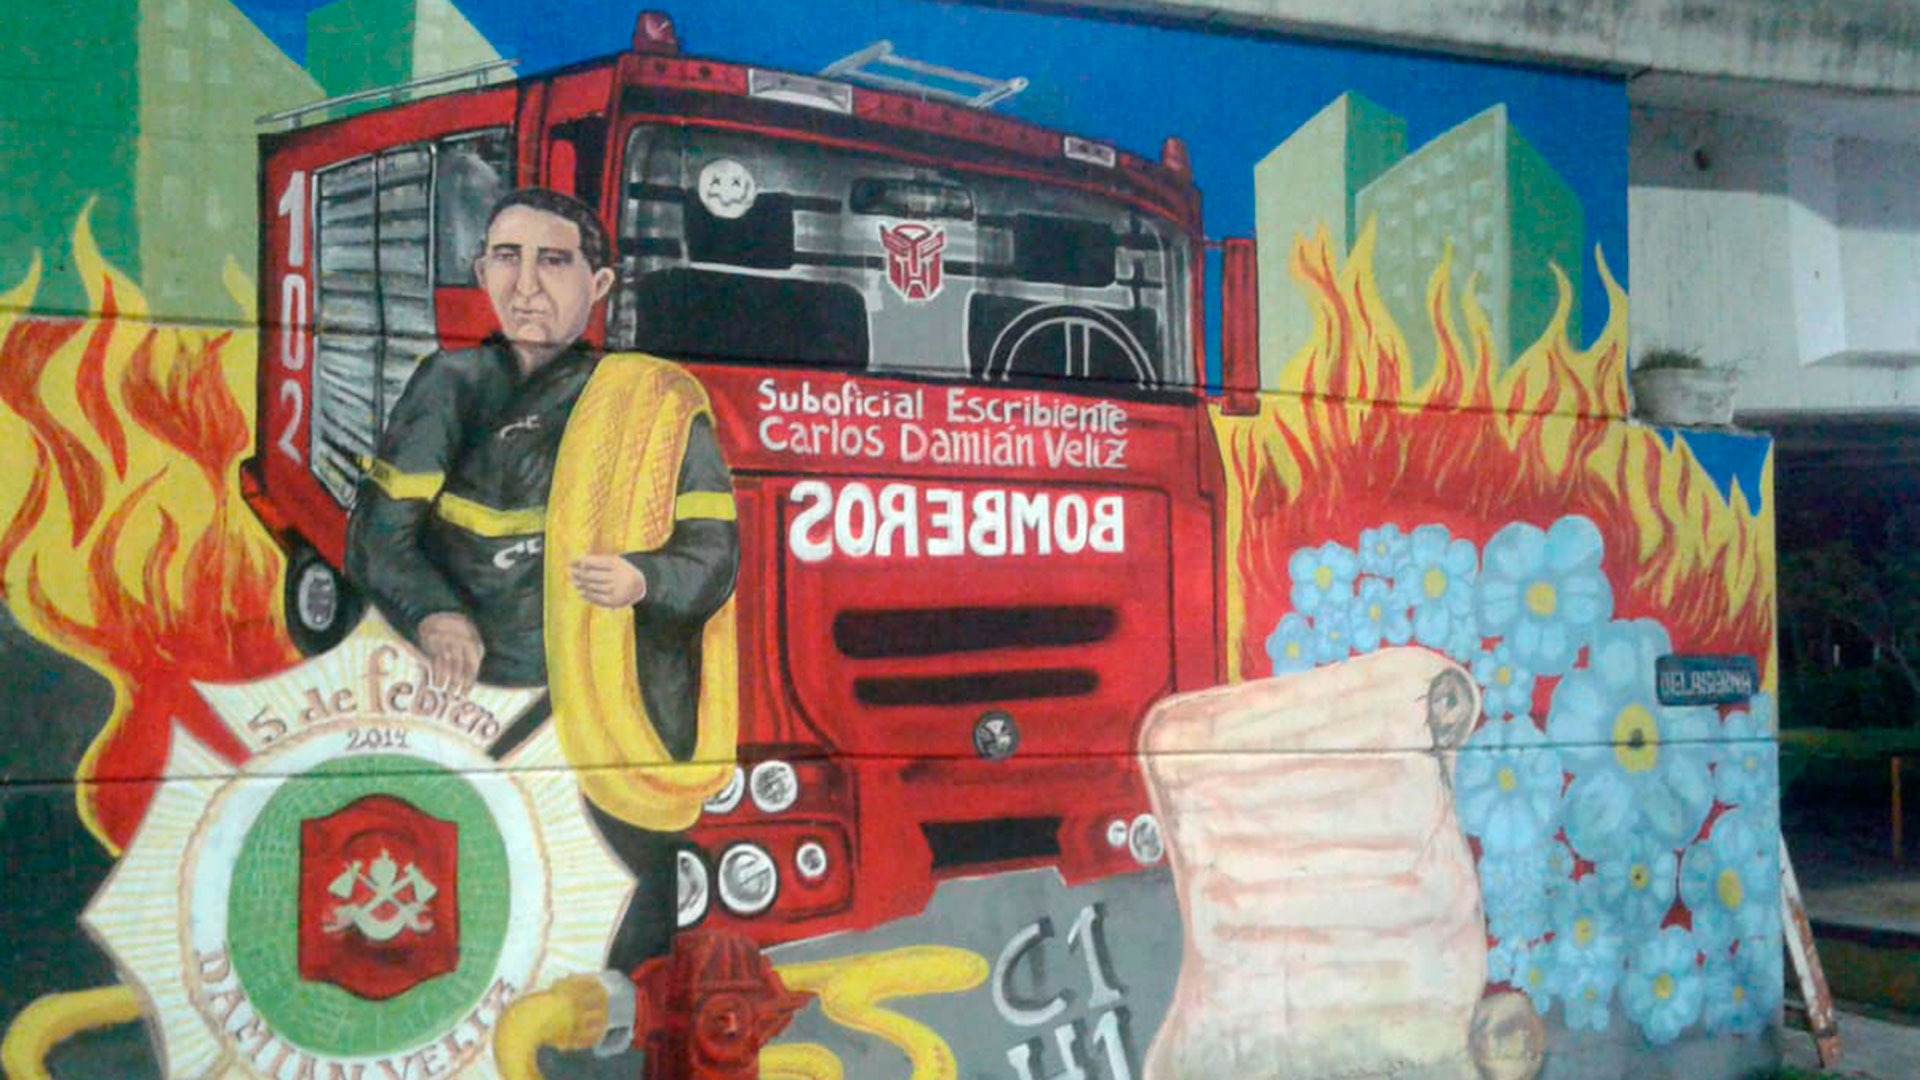 El mural en homenaje a una de las vÃ­ctimas, DamiÃ¡n VÃ©liz  hecho por sus vecinos de Avellaneda